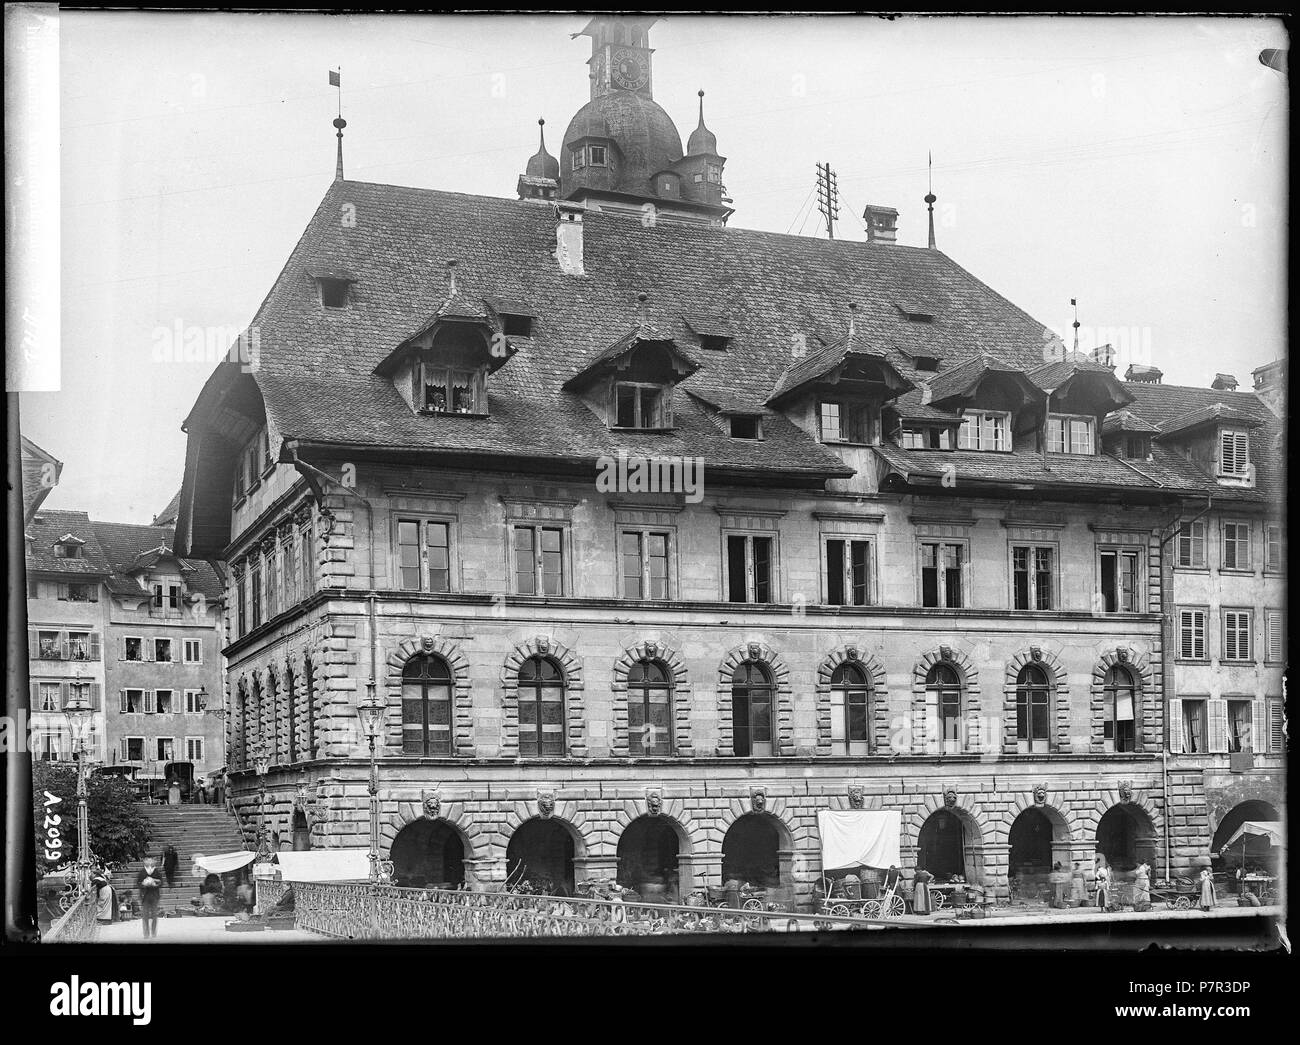 75 CH-NB - Luzern, Rathaus, vue partielle extérieure - Collection Max van Berchem - EAD-6714 Stock Photo